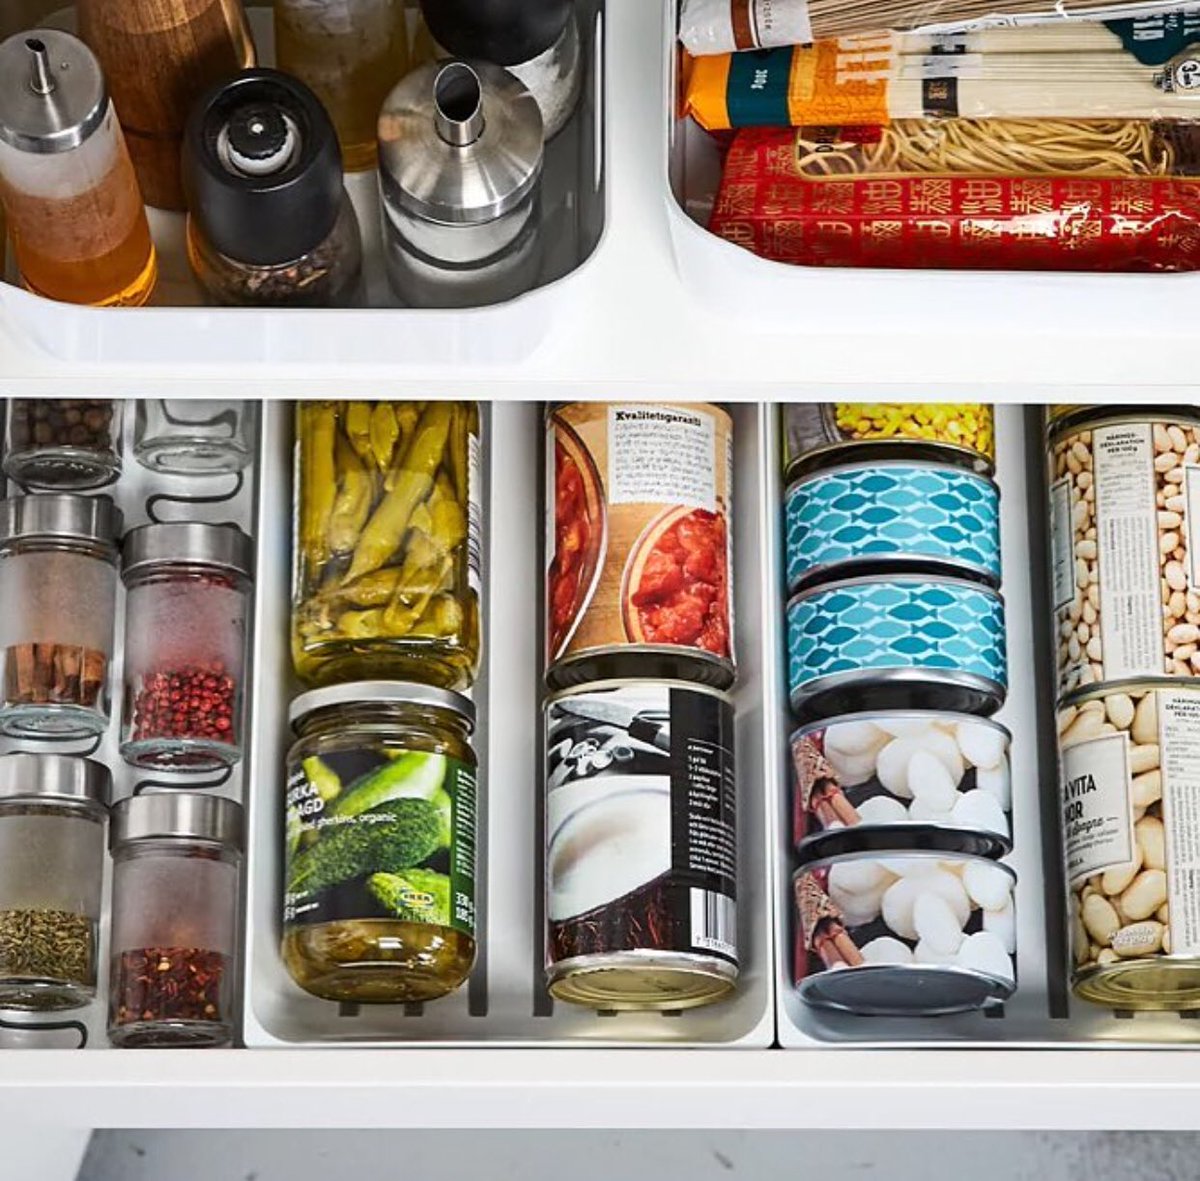 Produkty, které nelze uložit v chladničce